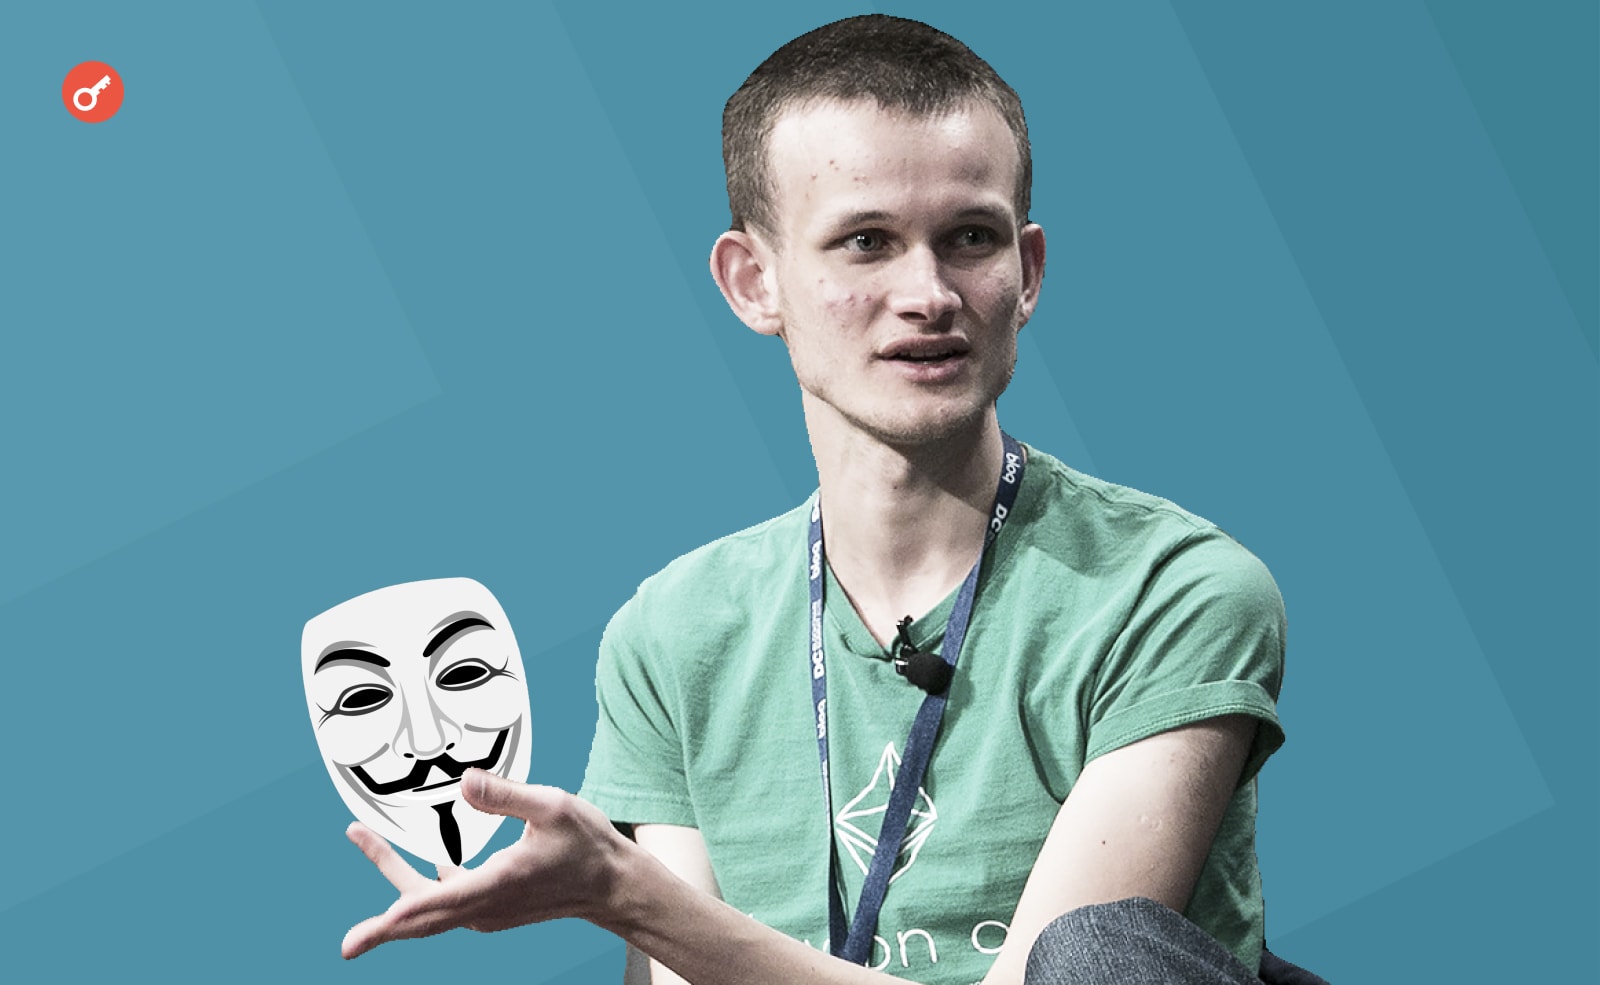 Виталик Бутерин представил концепт скрытых или невидимых адресов, который решает проблему анонимности криптопользователей.